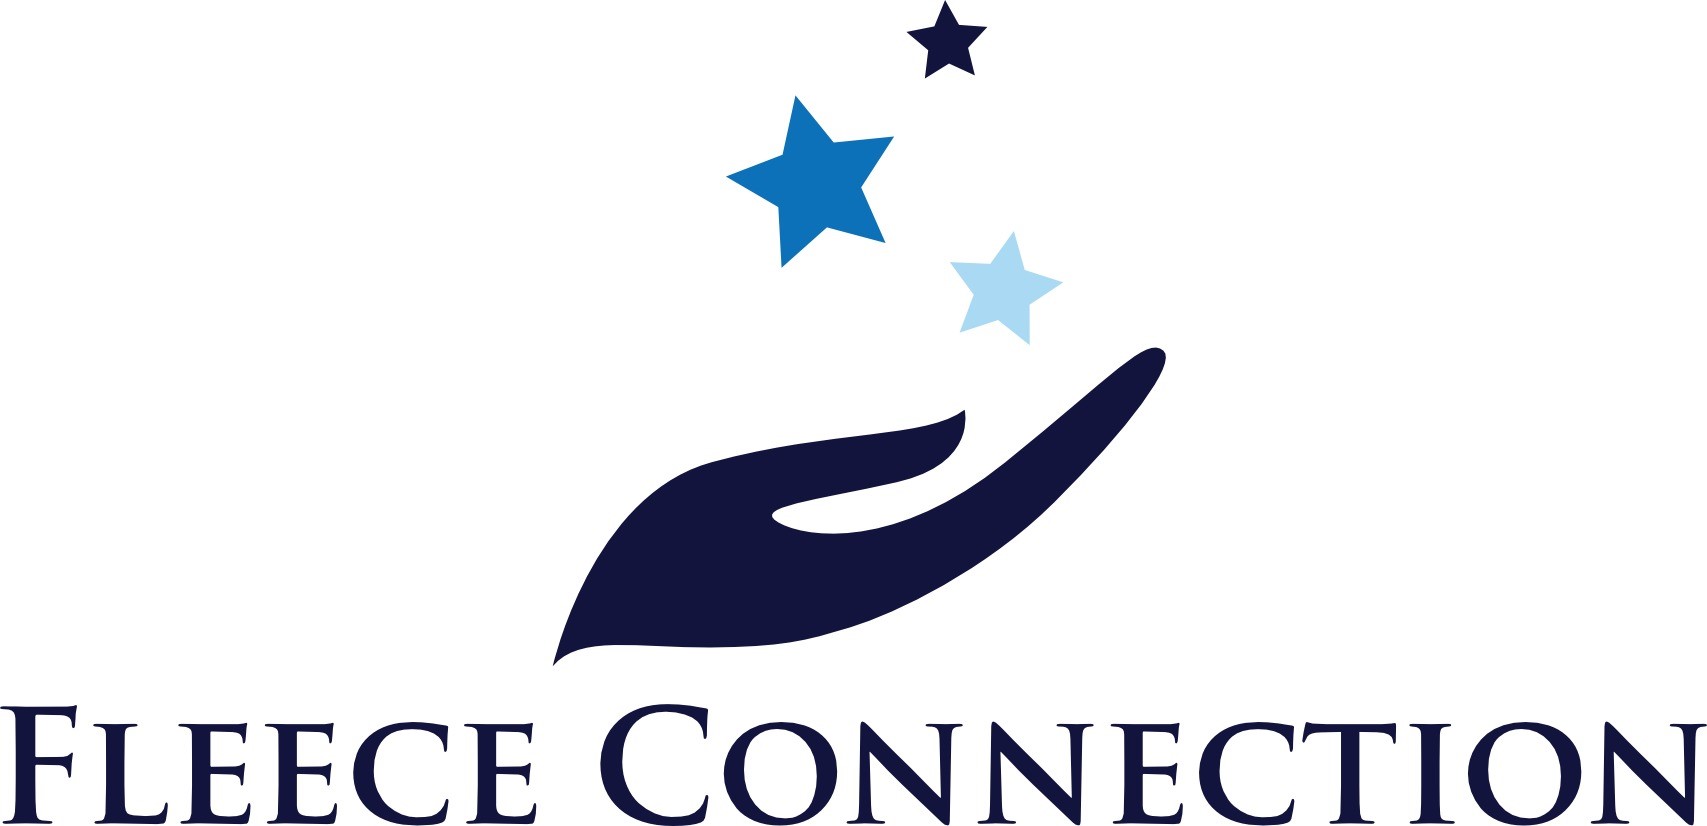 Fleece Connection Logo